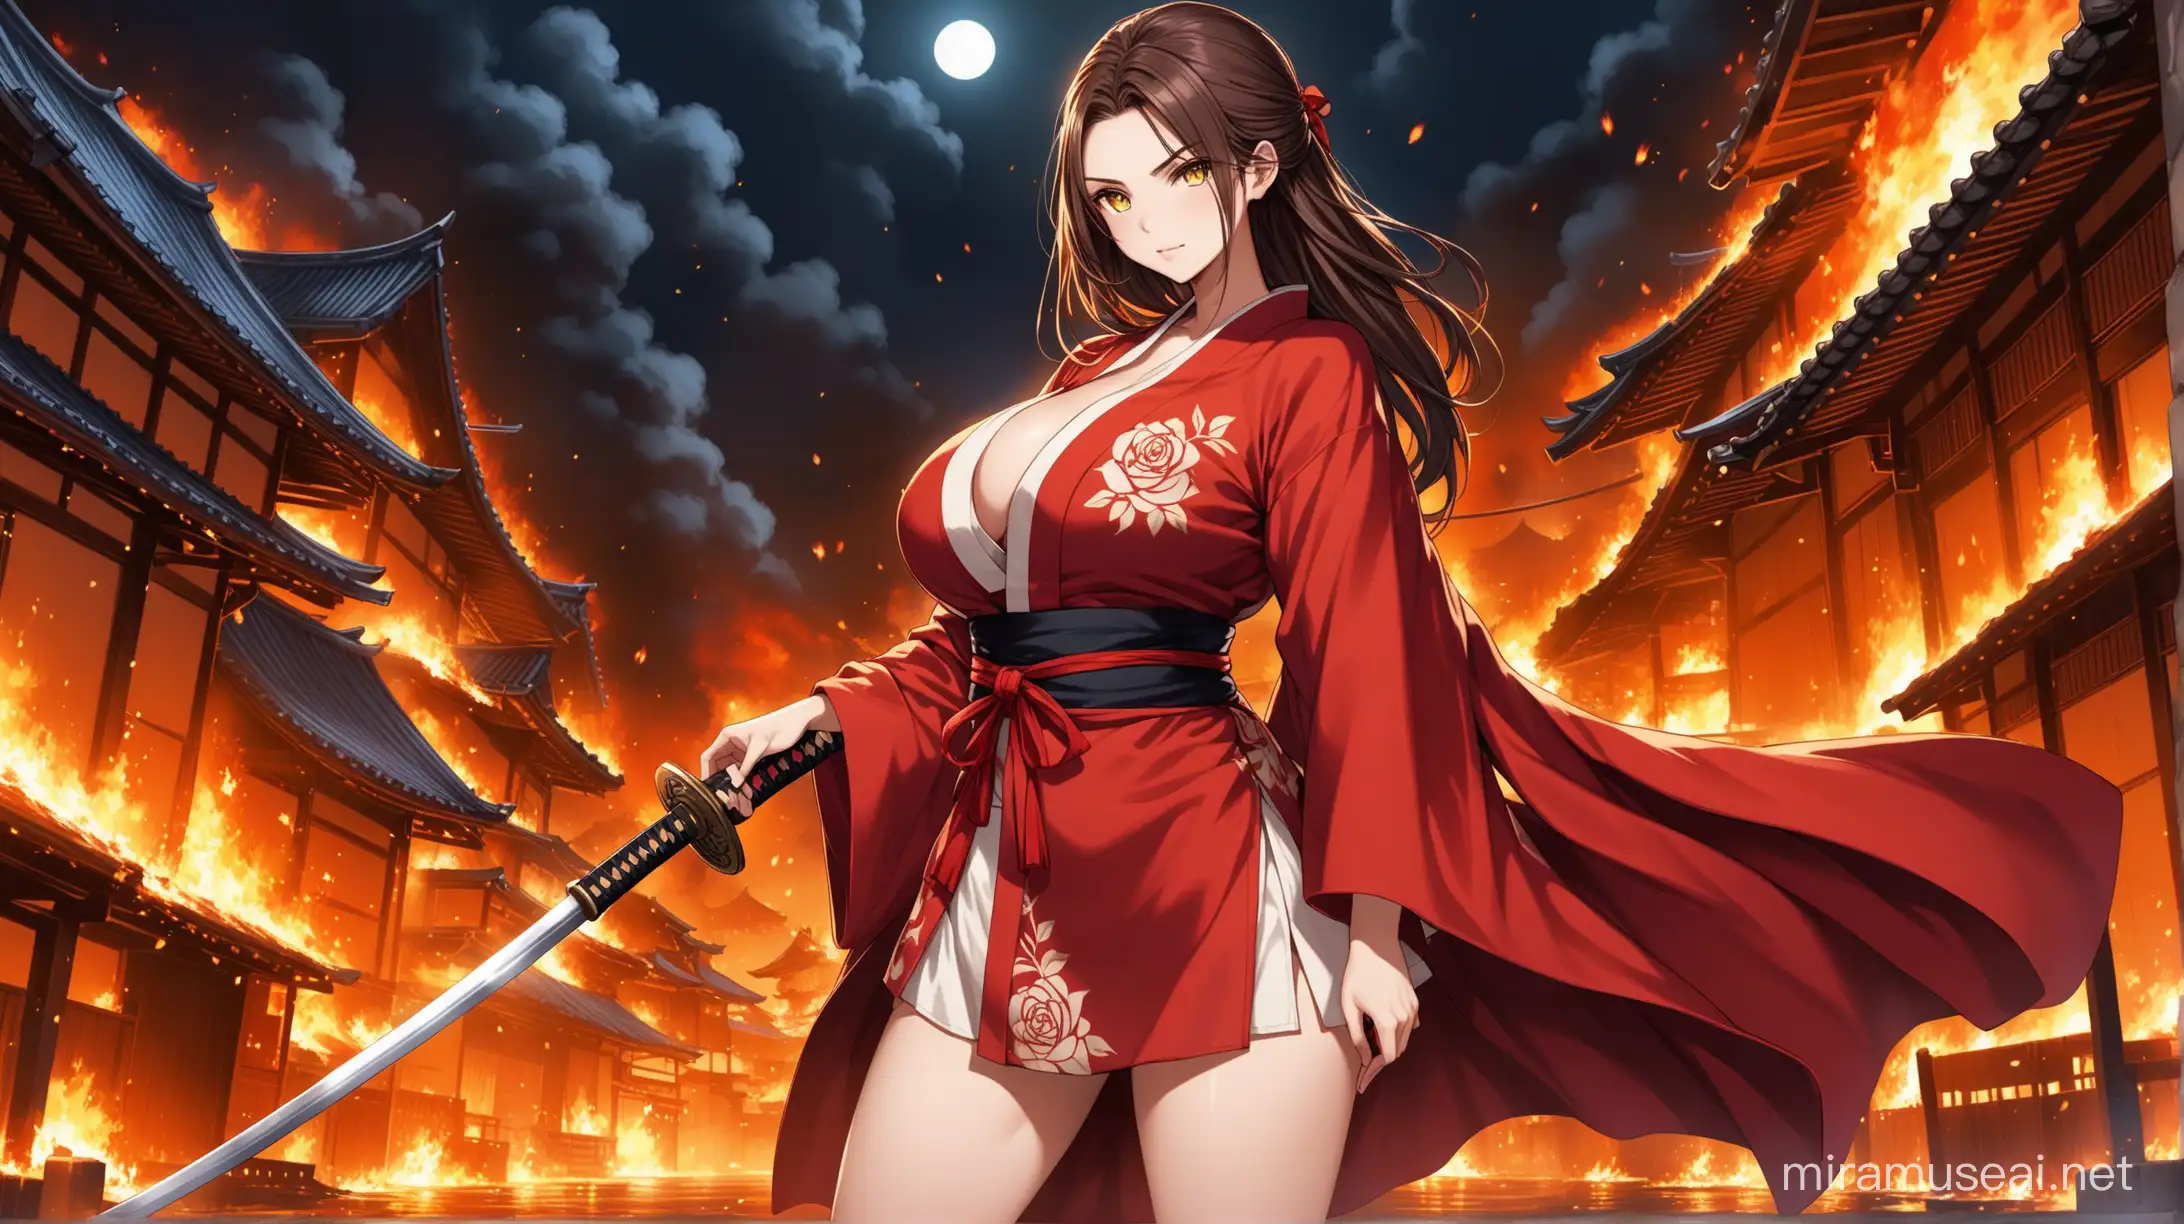 Mysterious Samurai Maiden with Katana Amidst Fiery Ruins